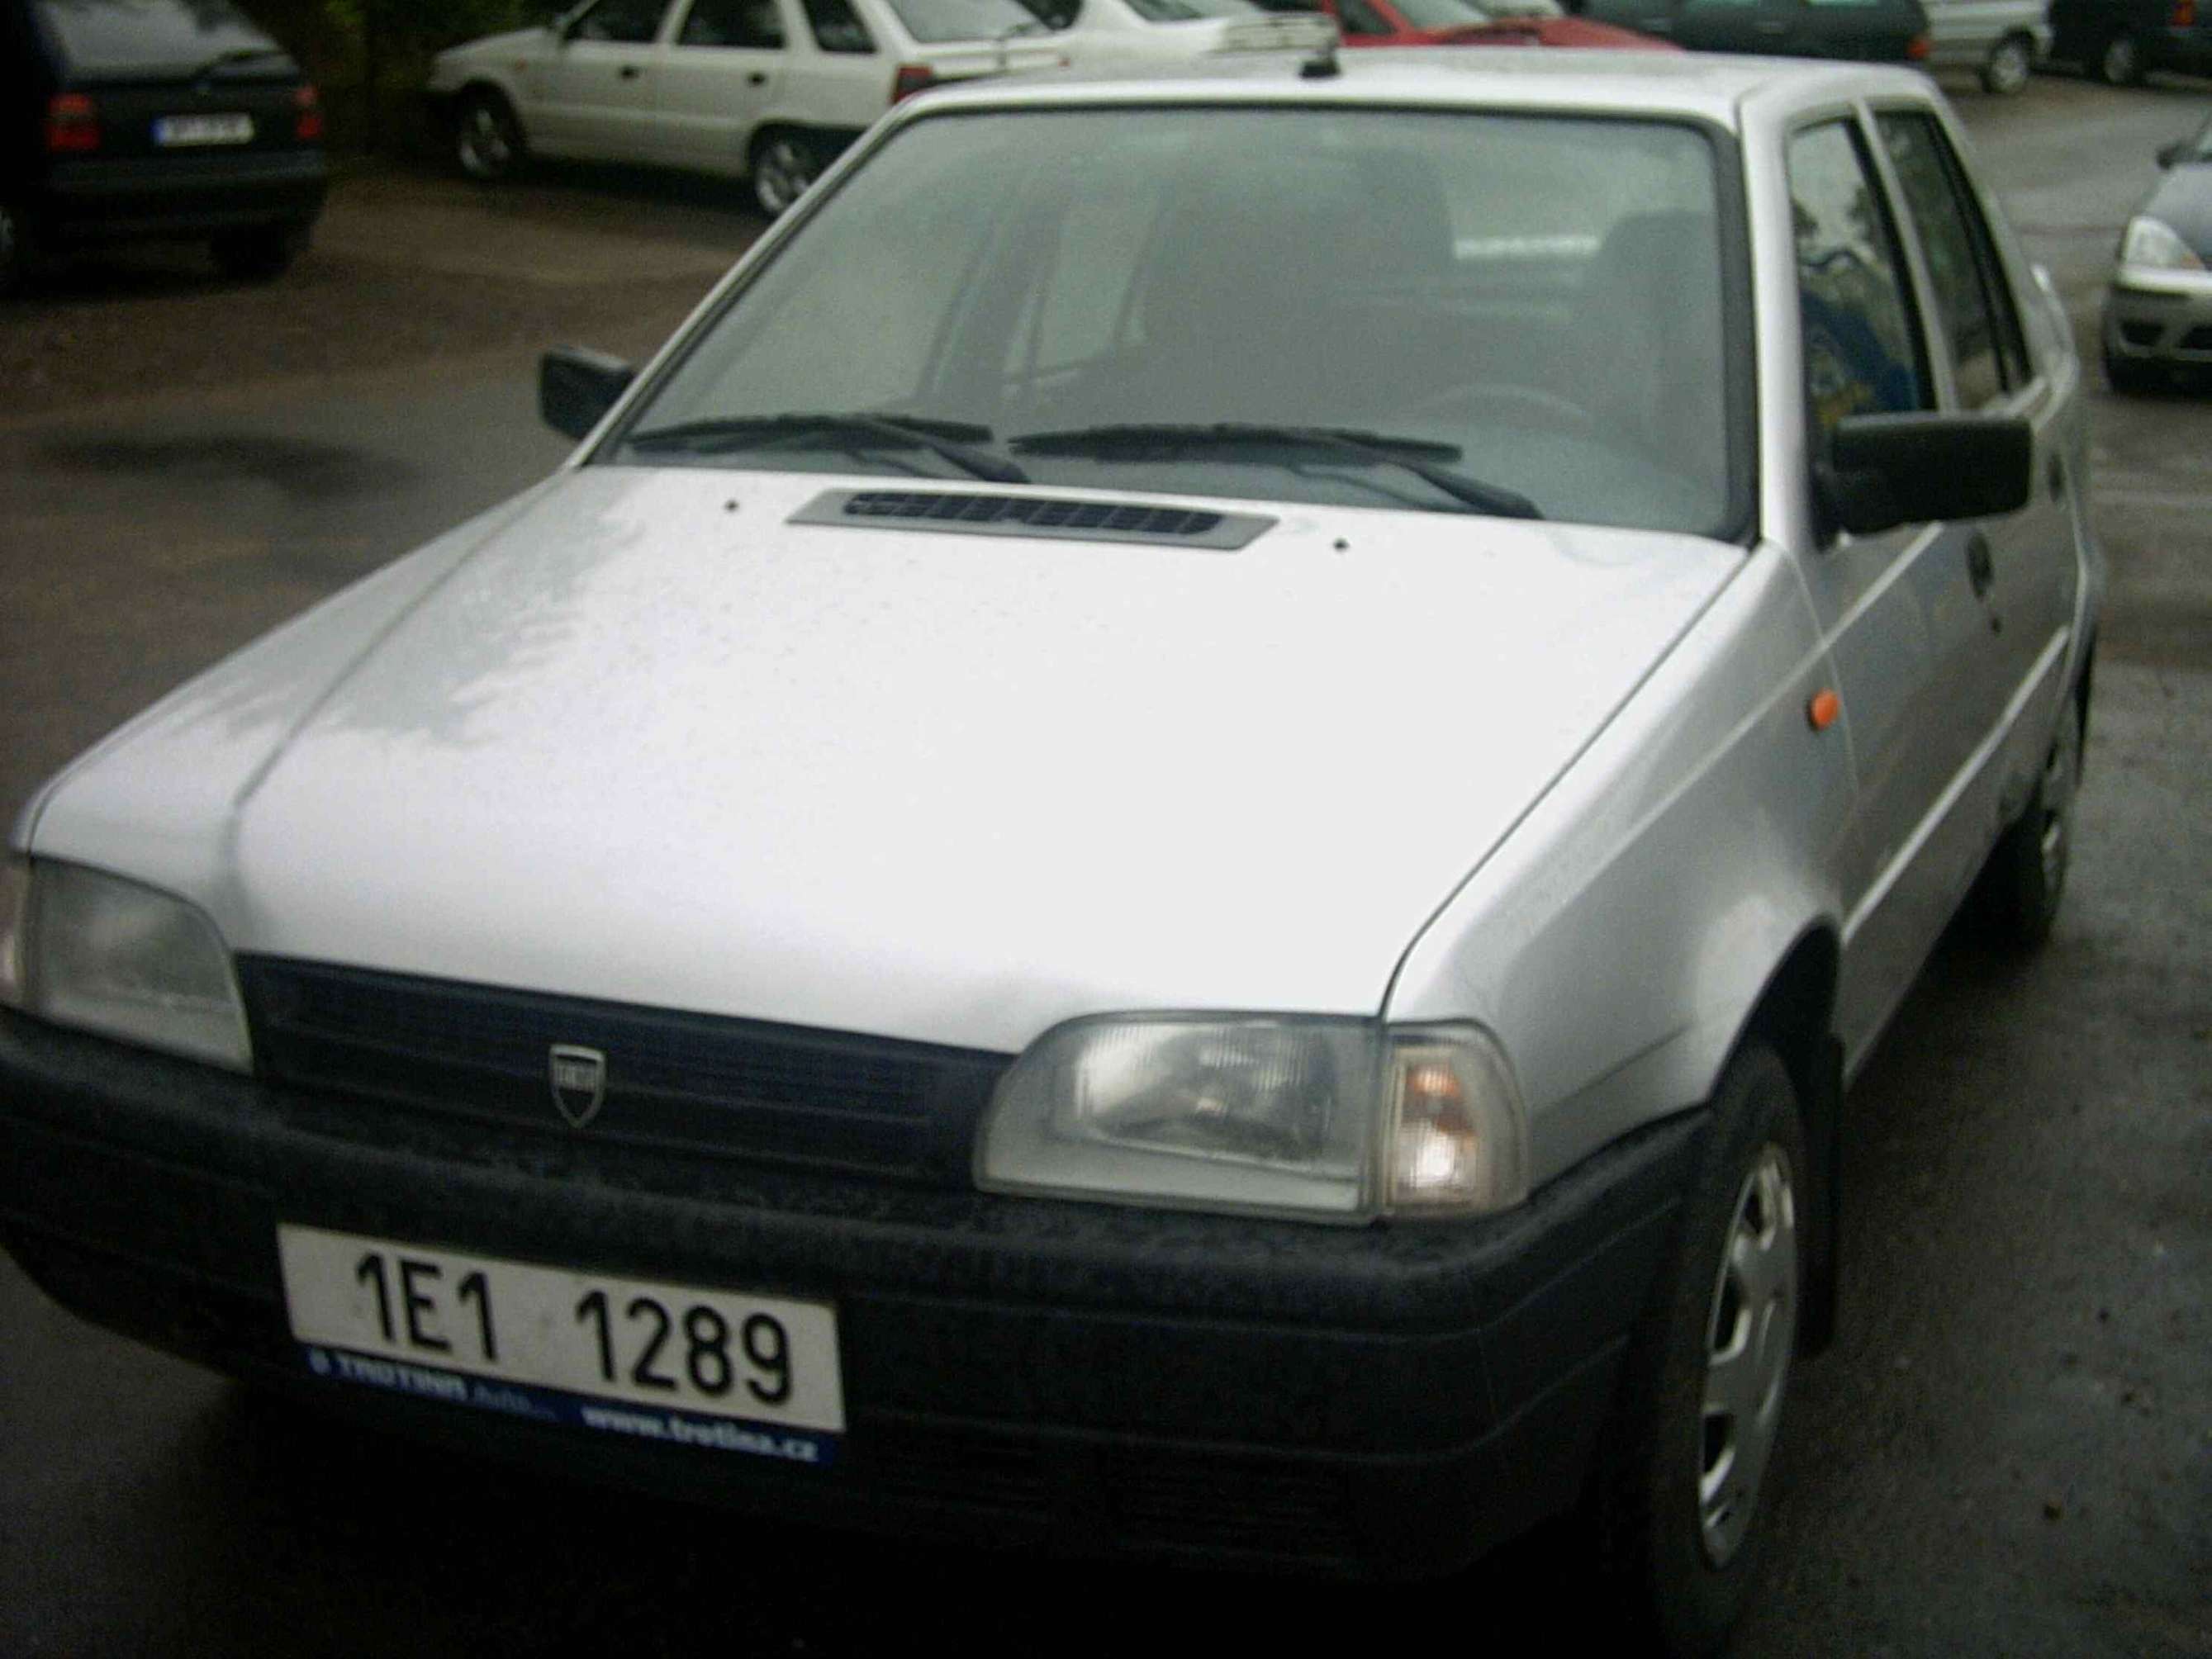 Dacia SupeRNova